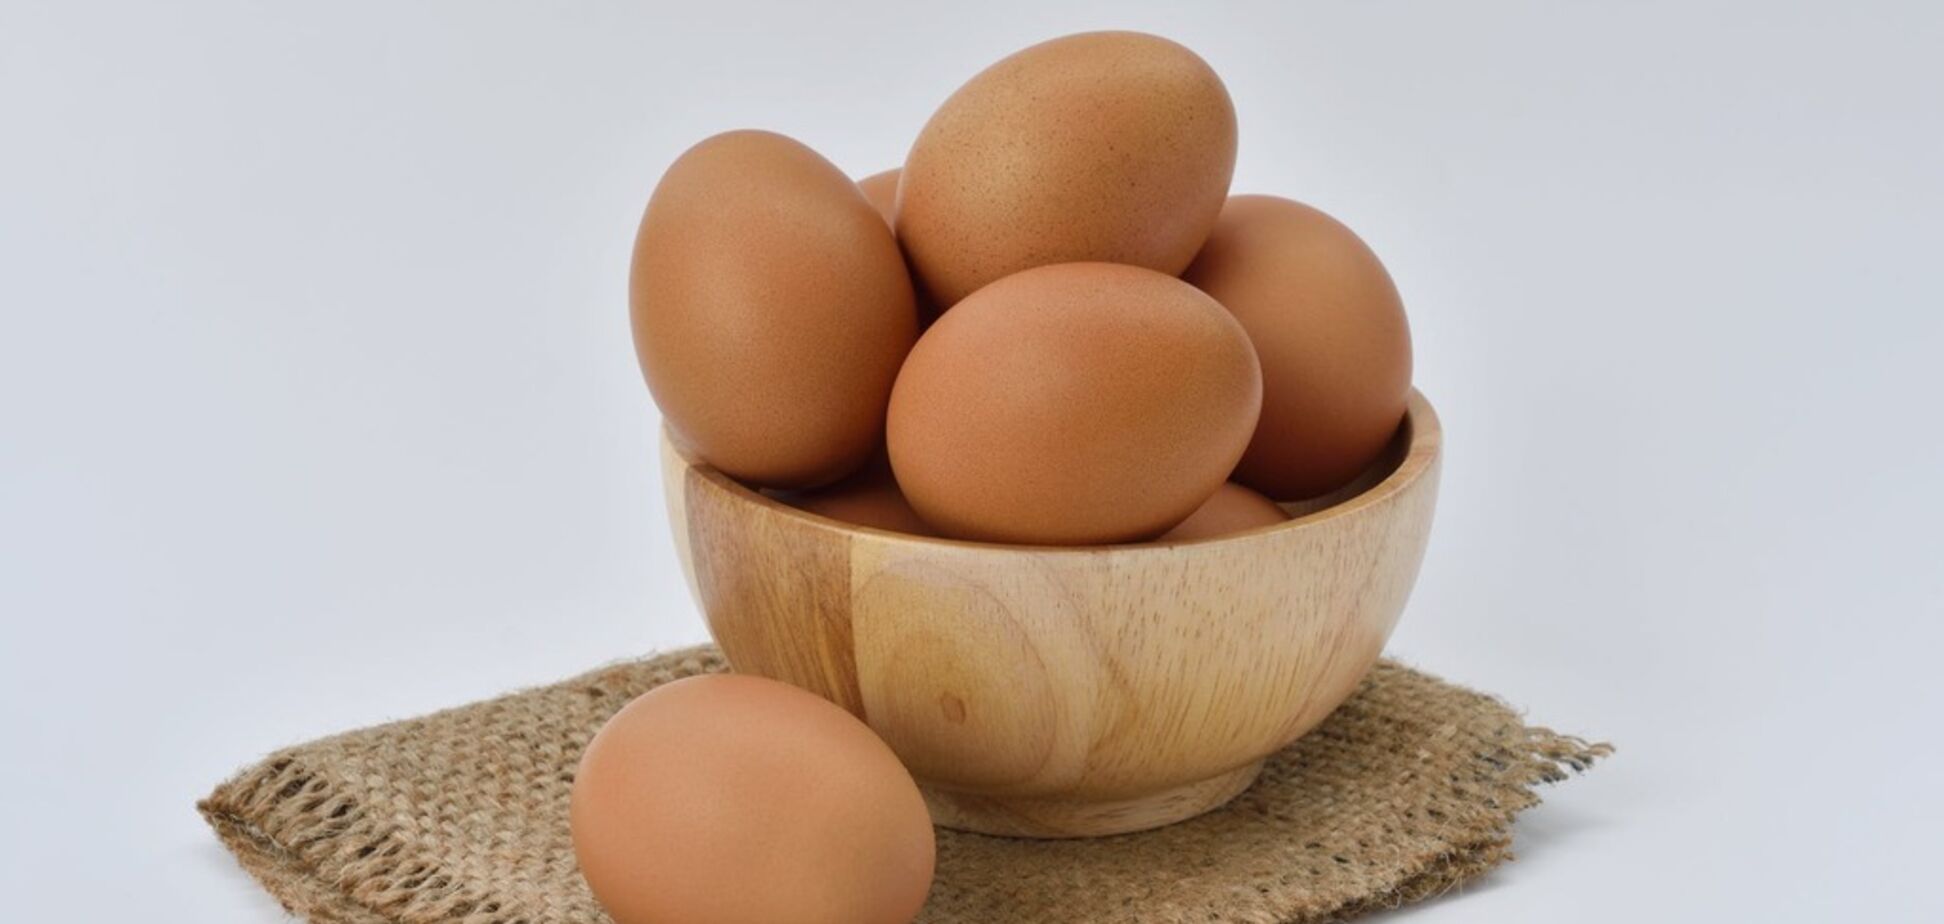 Вплоть до смерти: ученые назвали главную опасность яиц 